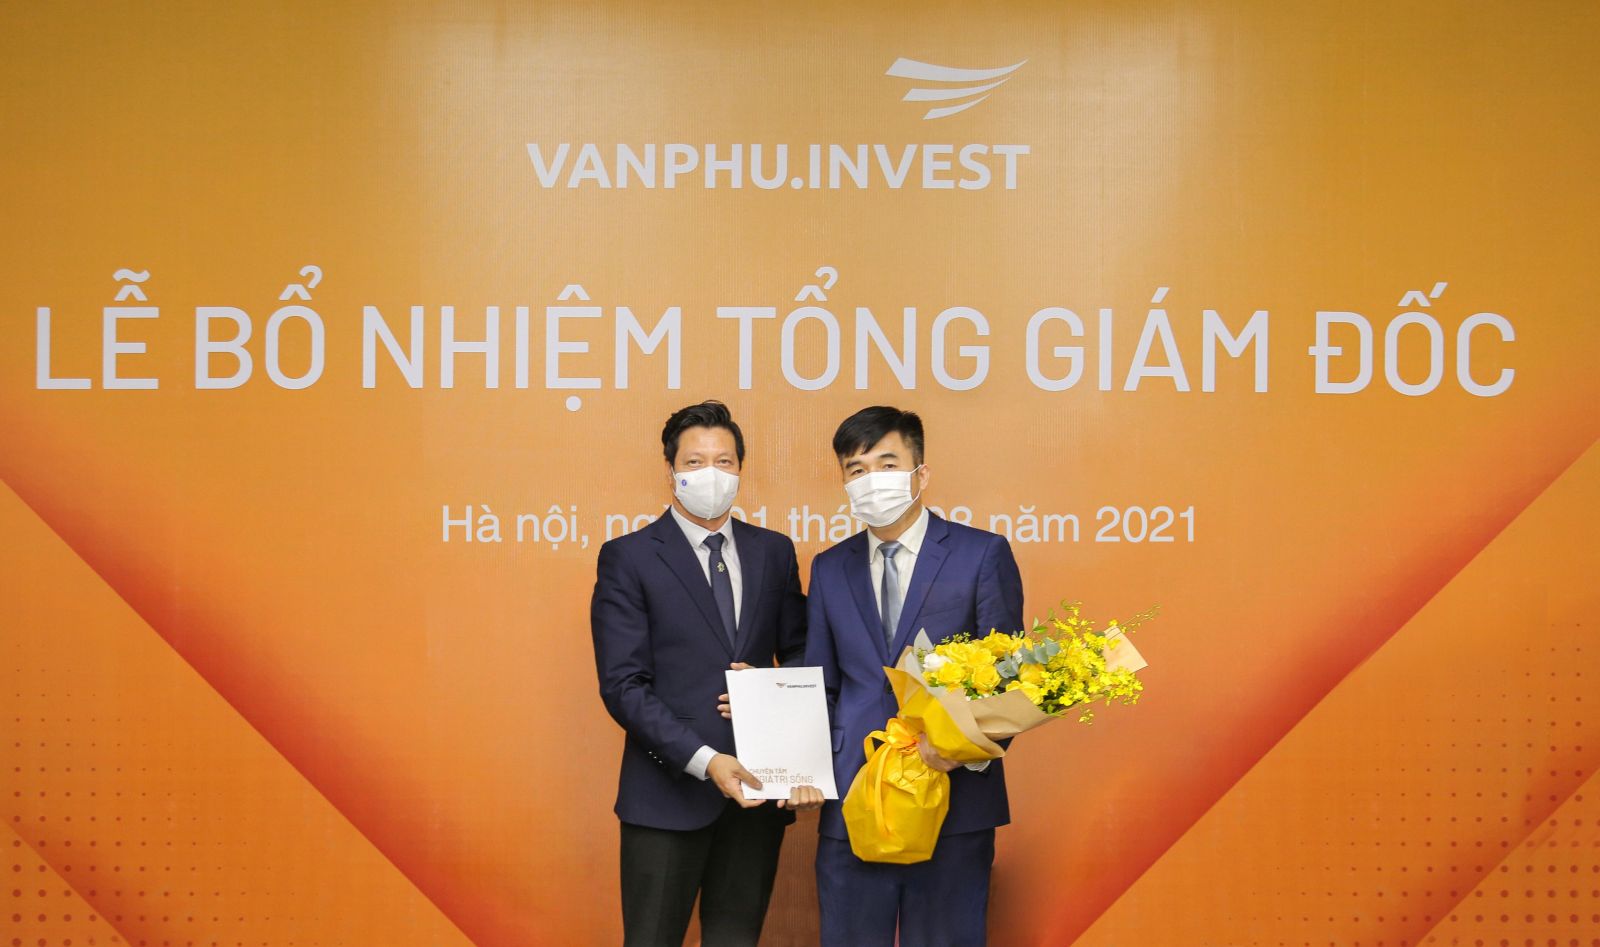 Ông Triệu Hữu Đại nhận quyết định bổ nhiệm Tổng giám đốc Công ty Cổ phần đầu tư Văn Phú – Invest